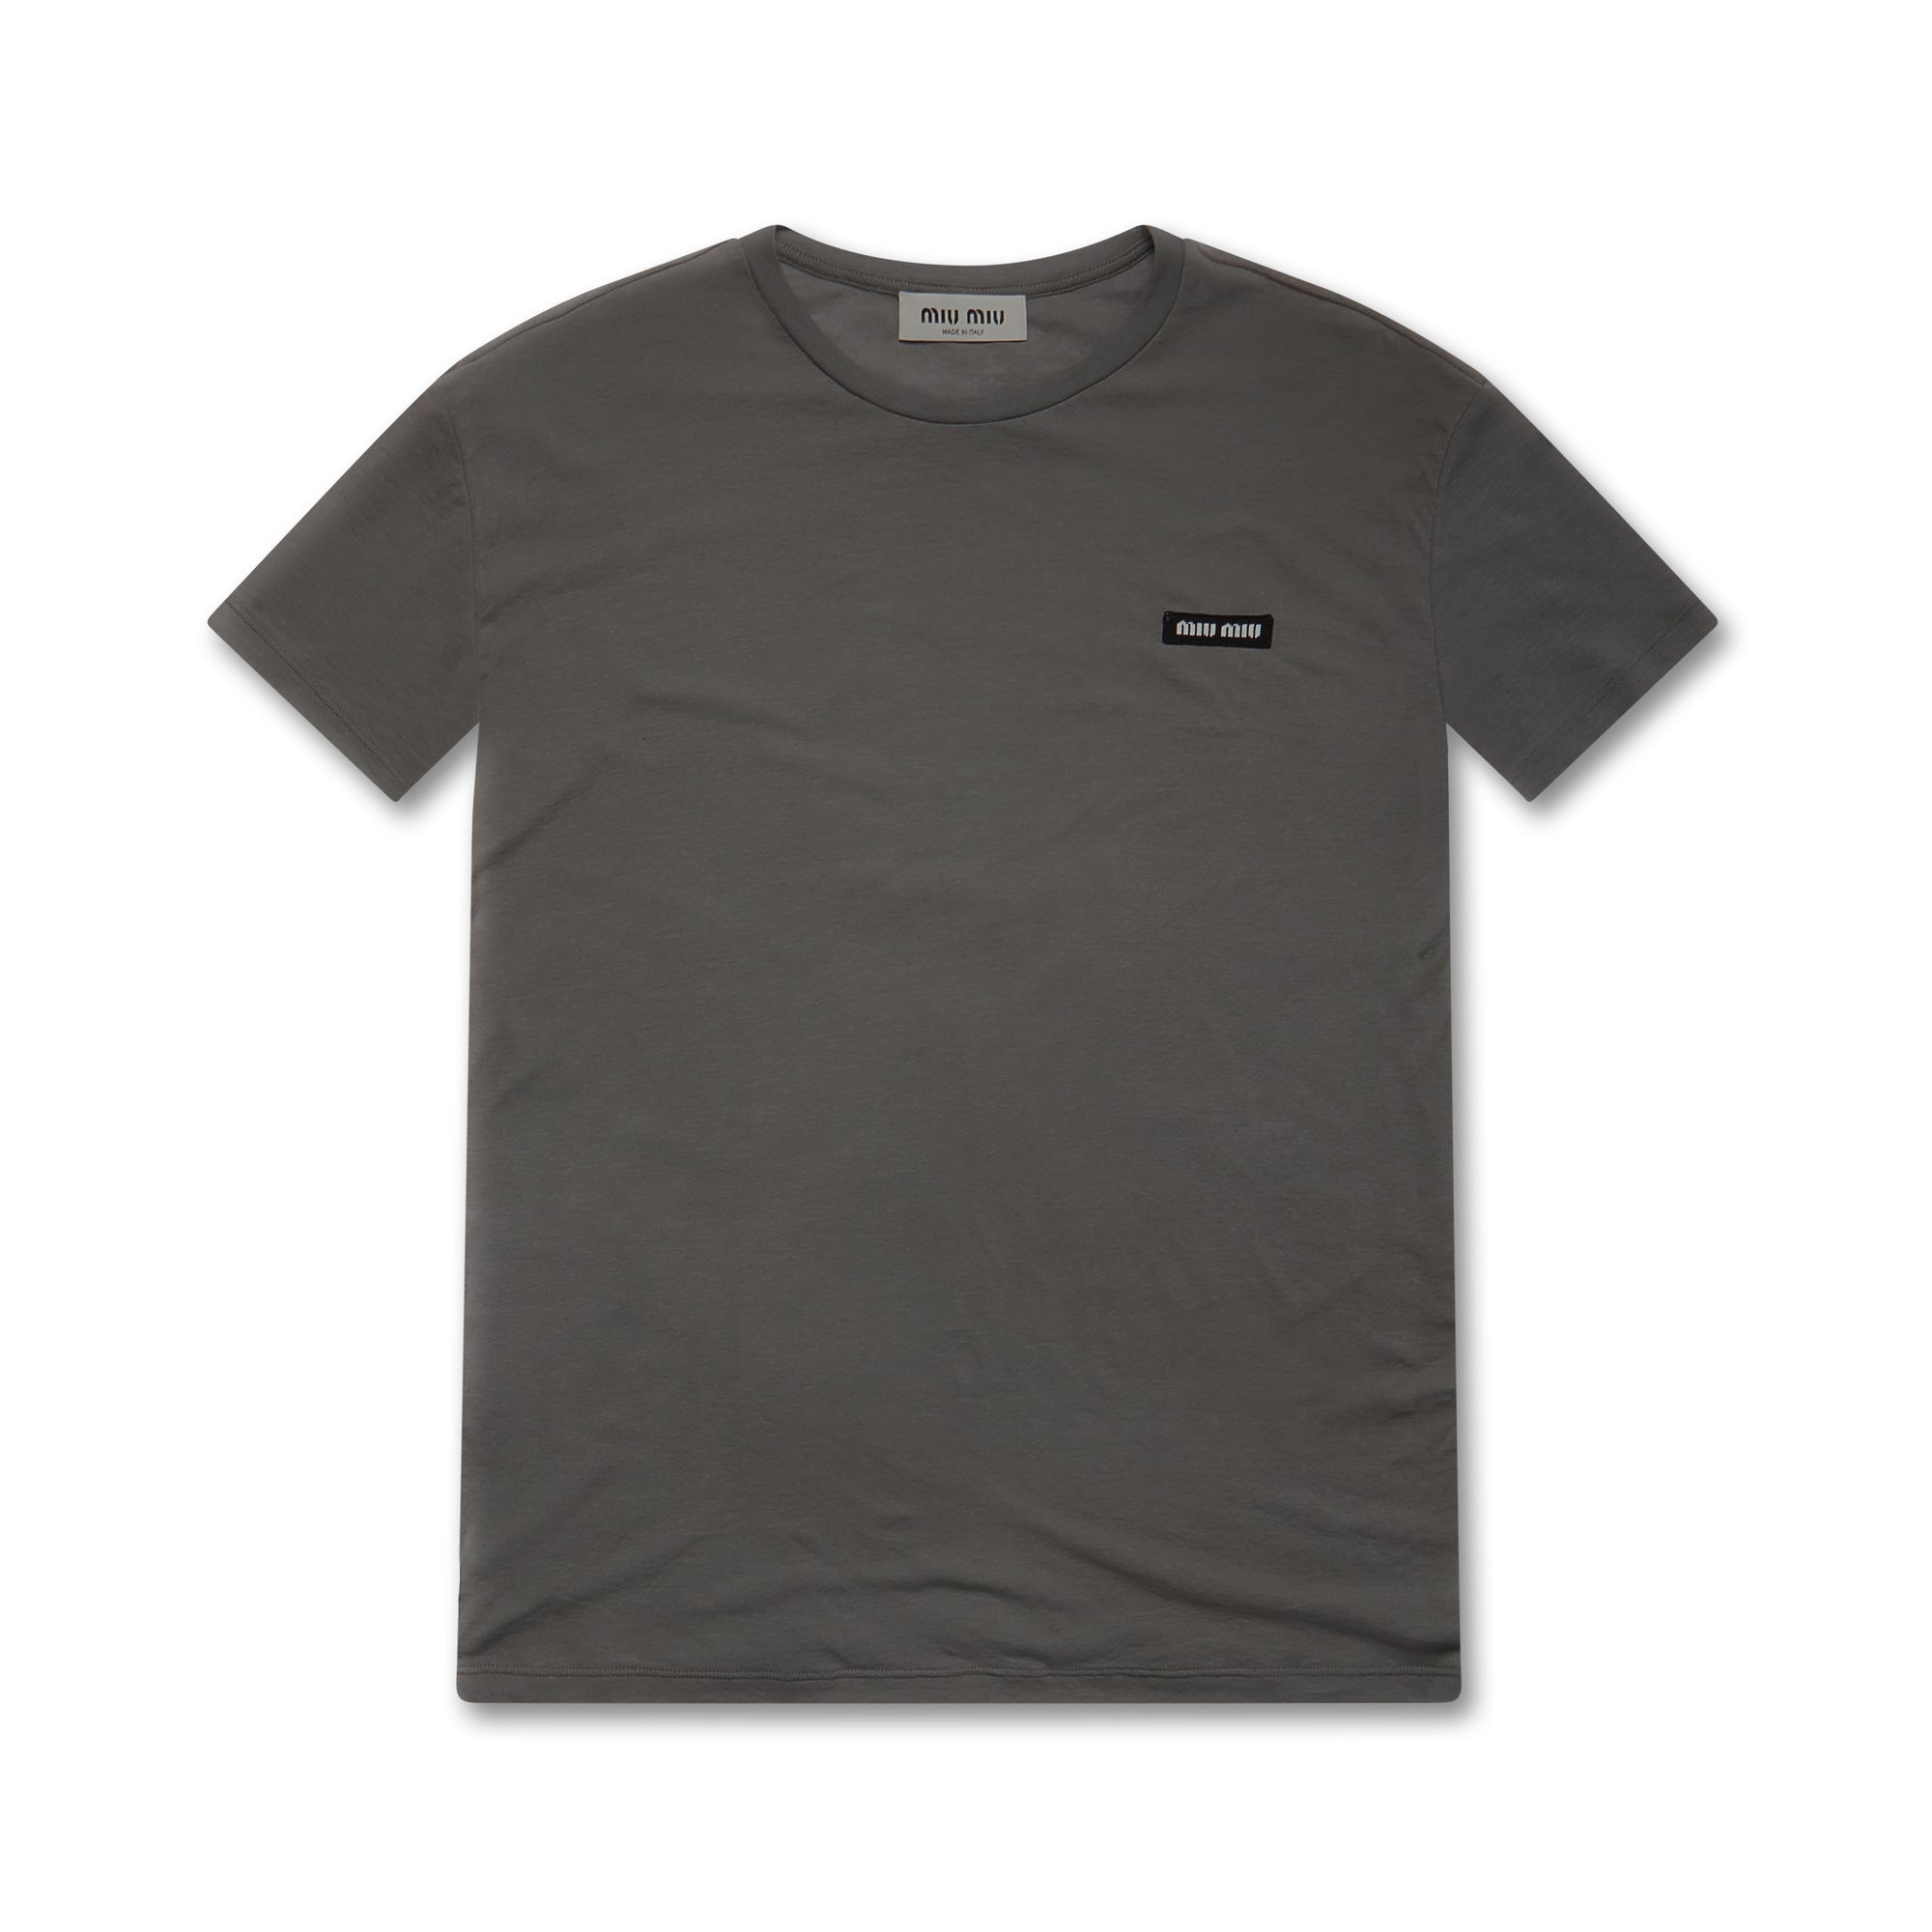 Miu Miu - Women’s Garment-dyed T-shirt - (Lead Grey) view 1